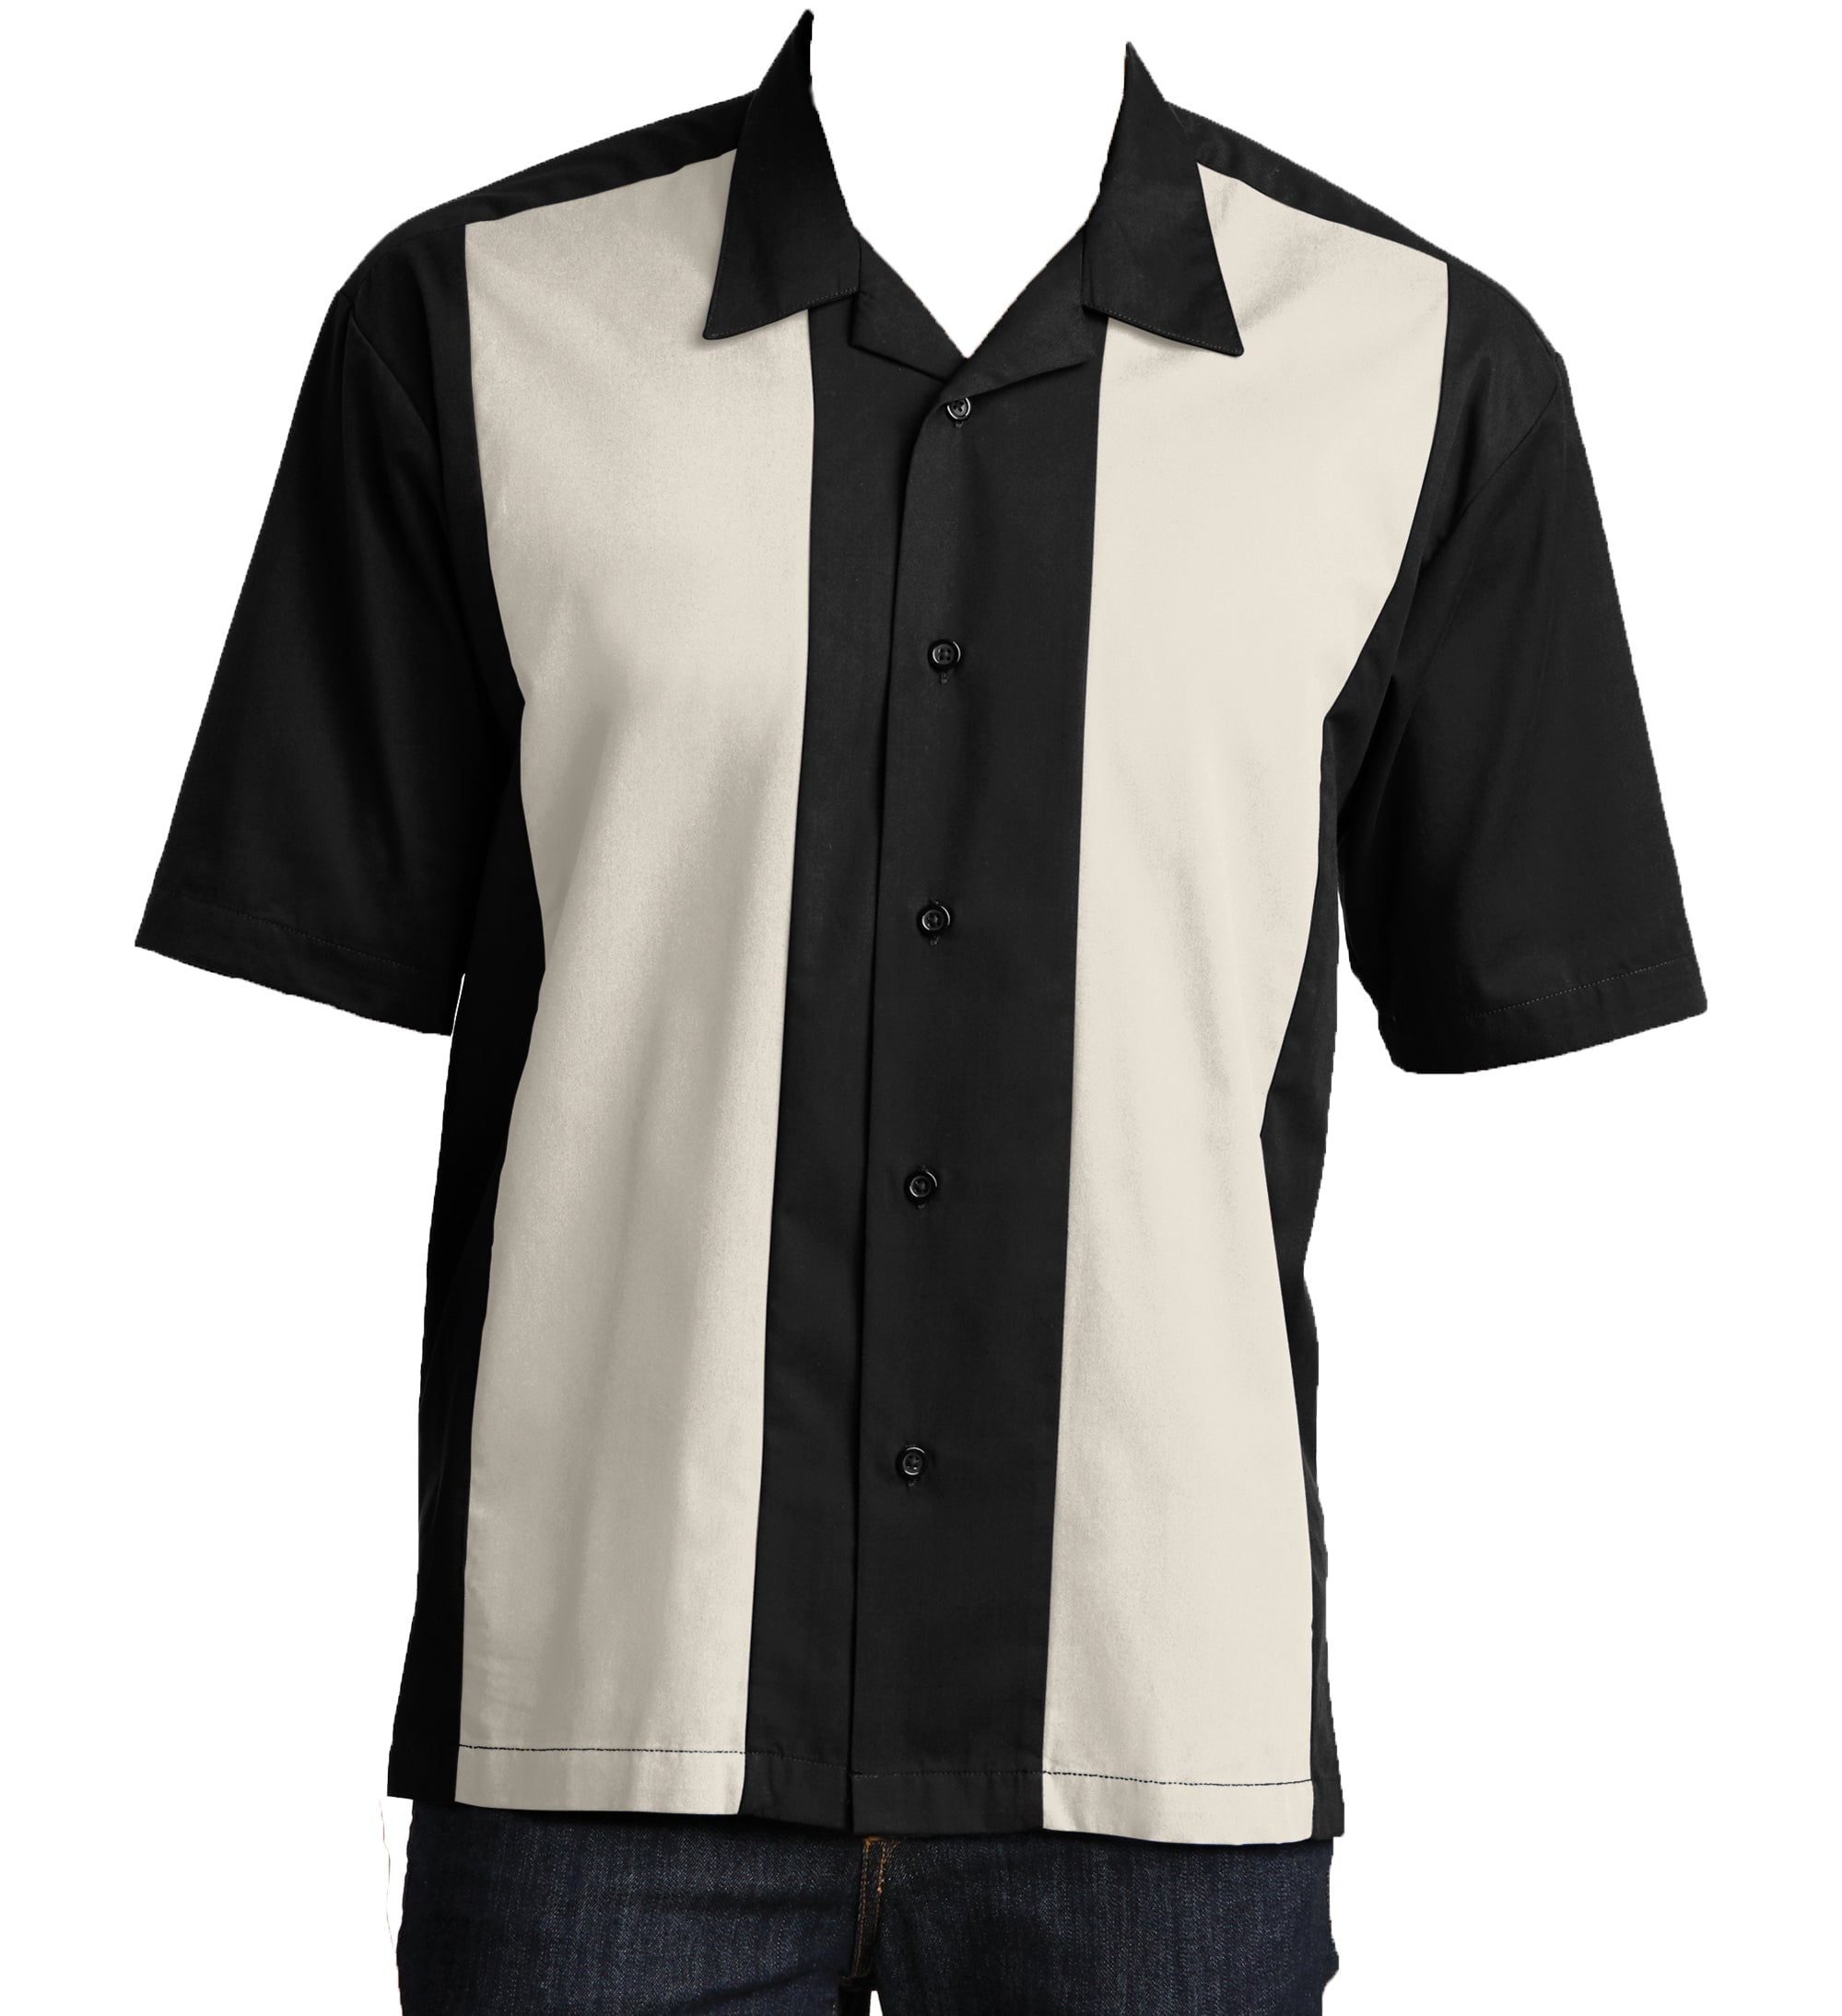 Men's Retro Classic Bowling Shirt Charlie Sheen Harper Fifties s